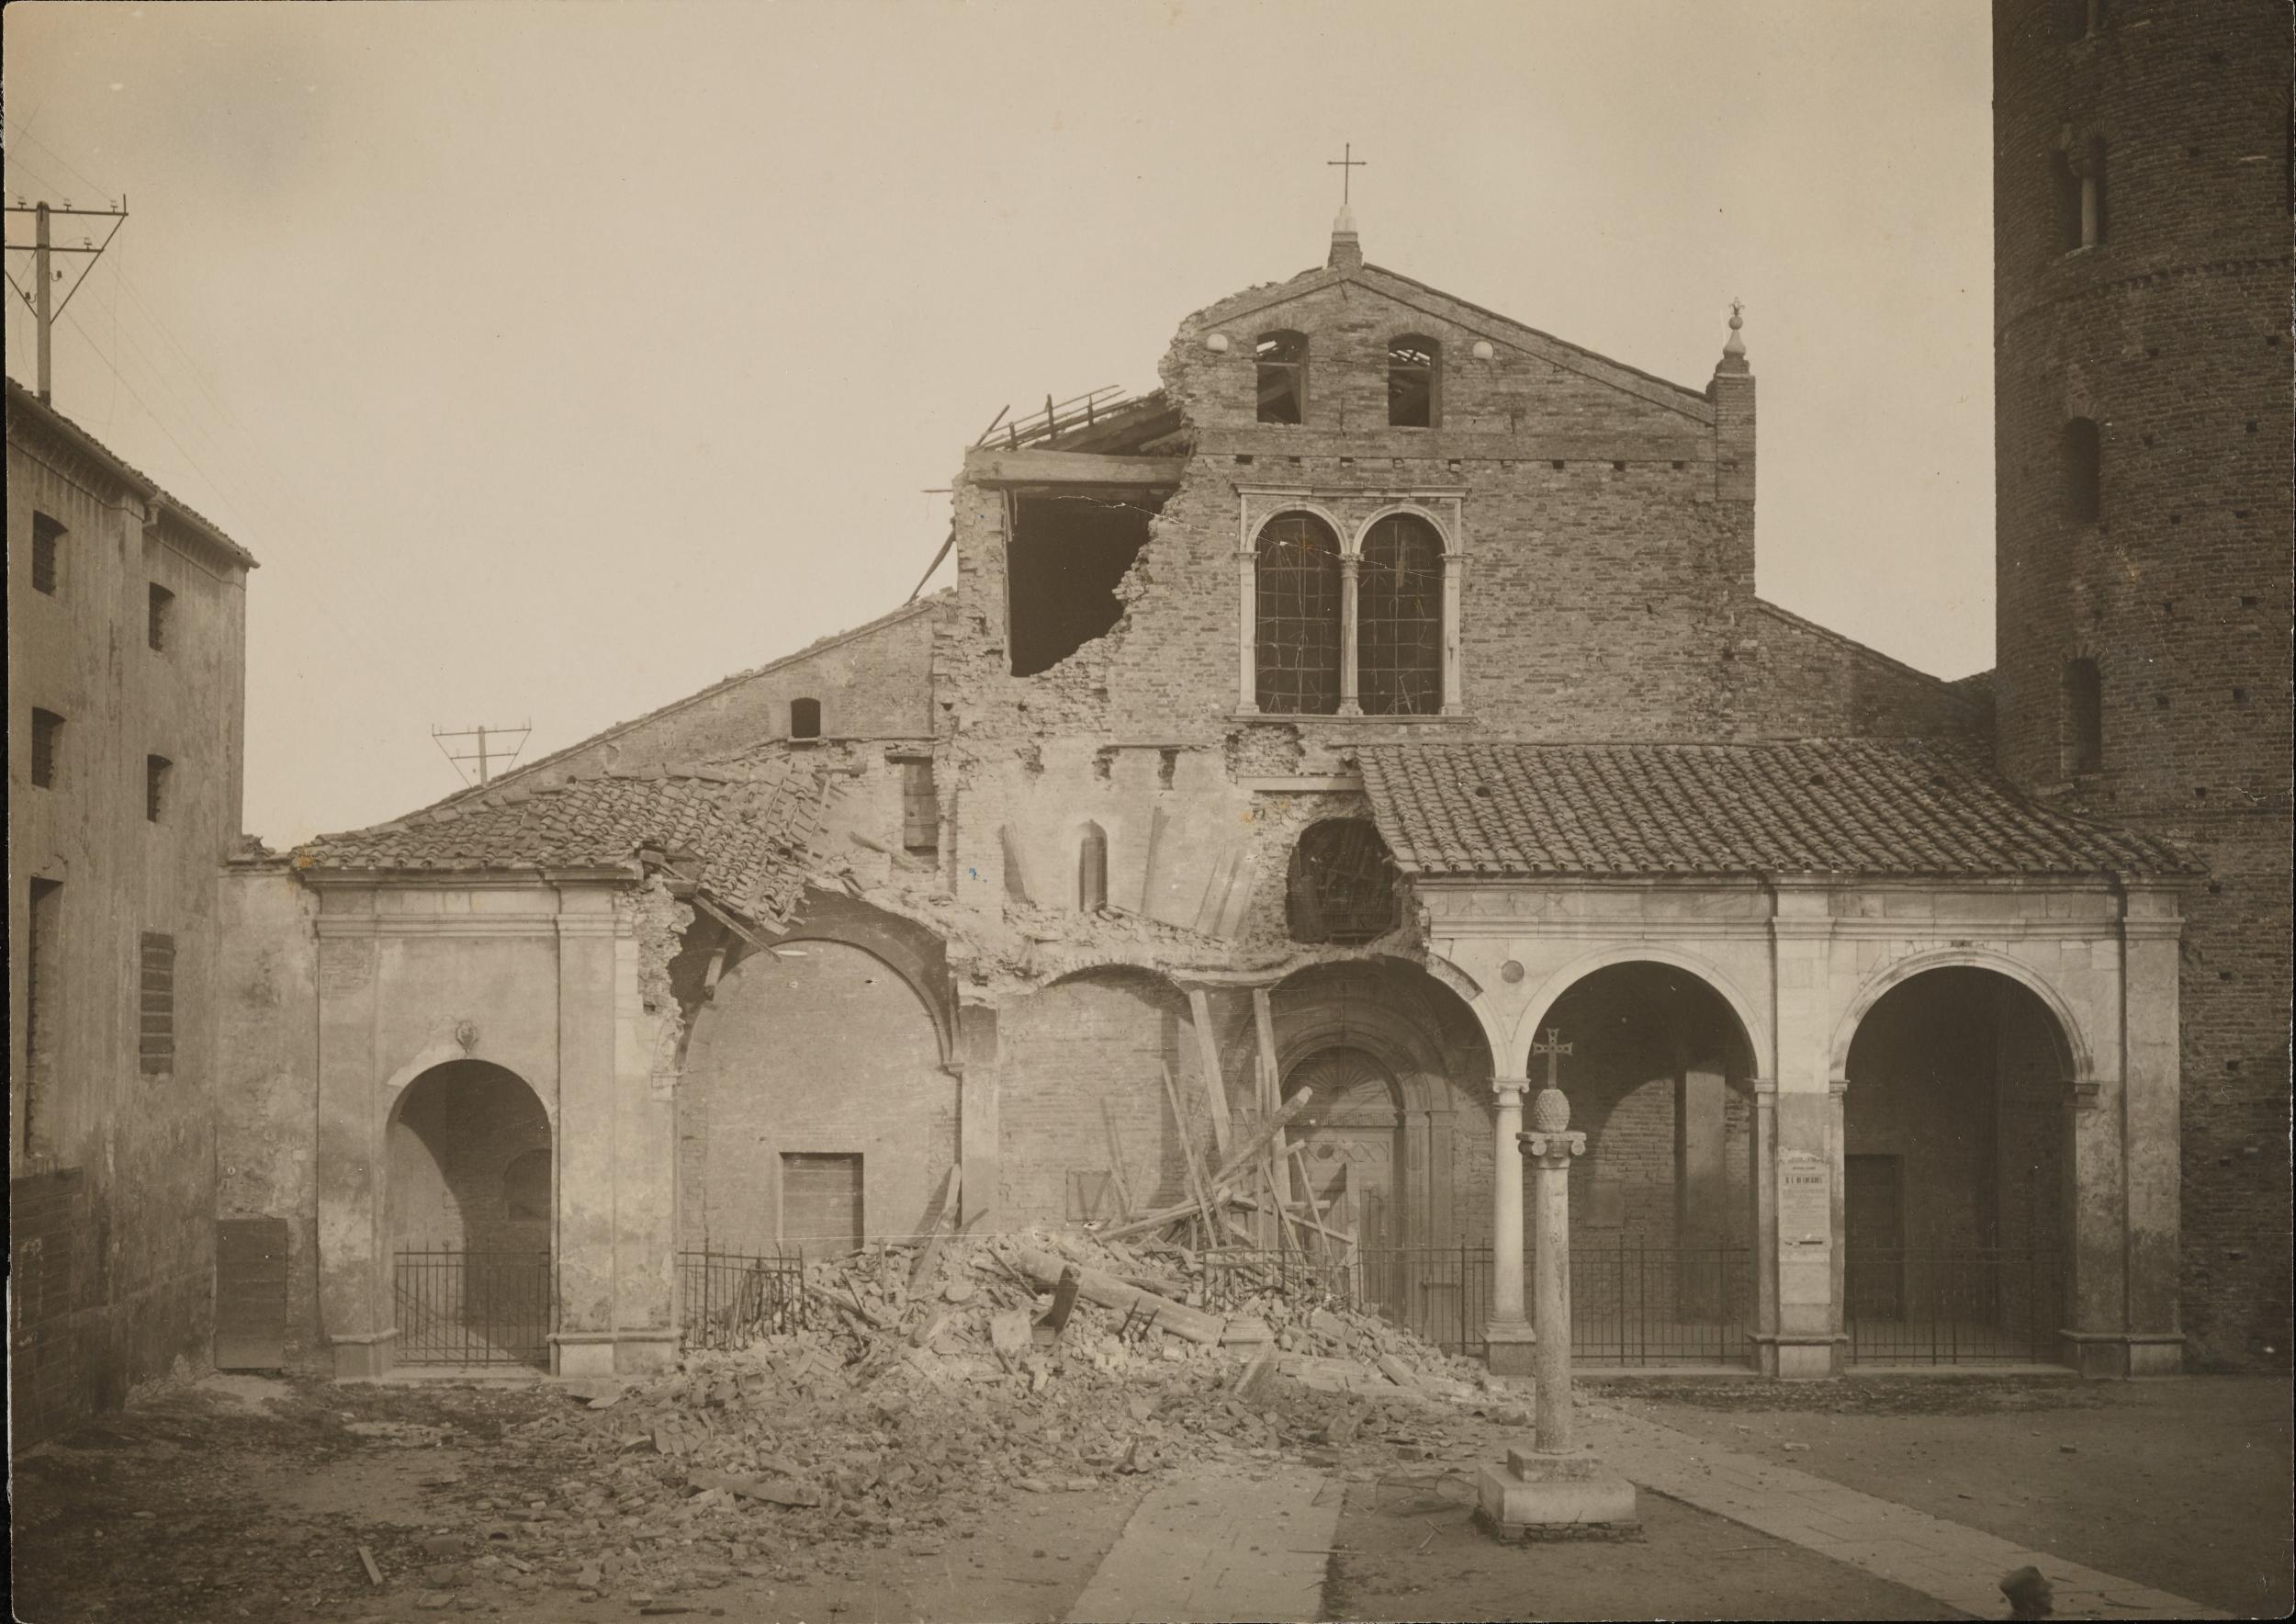 Fotografo non identificato, Ravenna - Chiesa di S. Apollinare Nuovo, facciata, dopo i bombardamenti aerei, gelatina ai sali d'argento, MPI303885